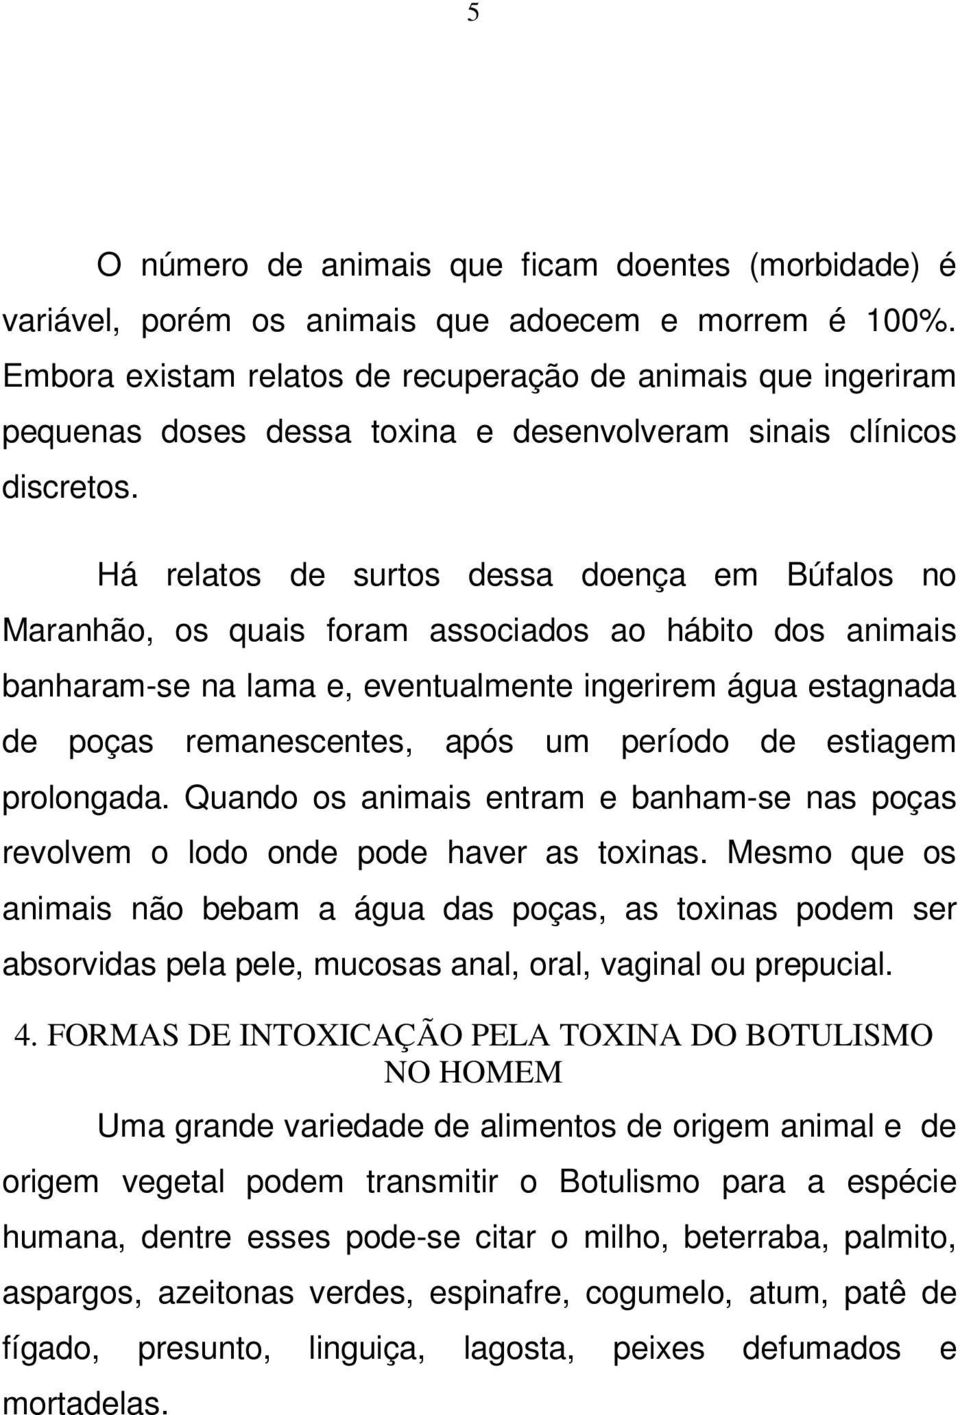 Há relatos de surtos dessa doença em Búfalos no Maranhão, os quais foram associados ao hábito dos animais banharam-se na lama e, eventualmente ingerirem água estagnada de poças remanescentes, após um